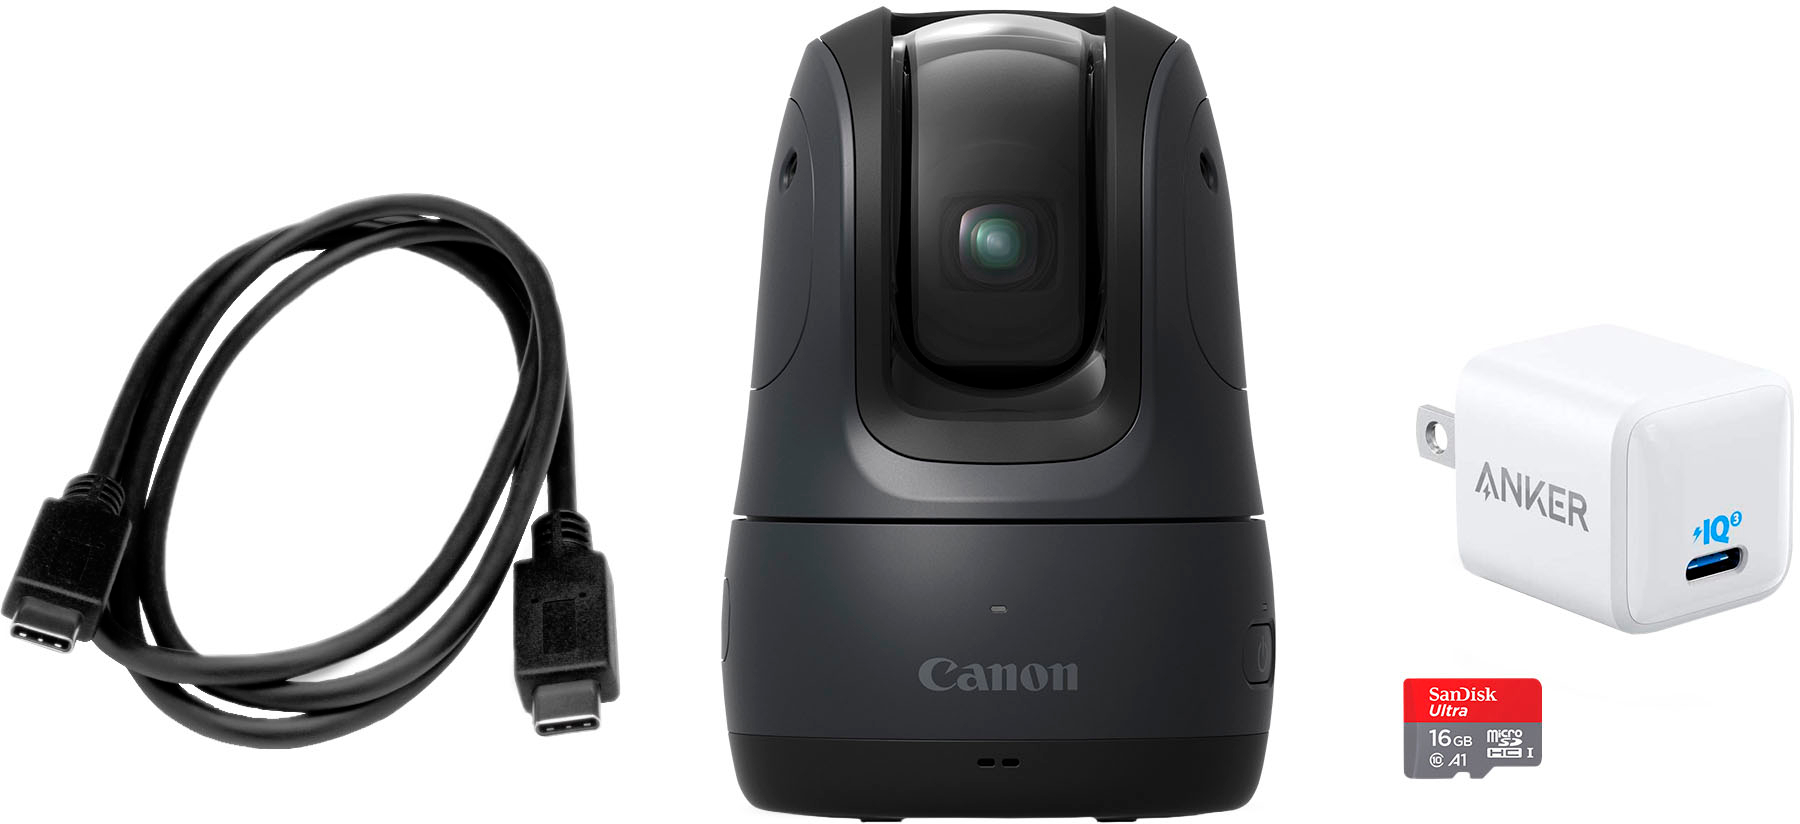 カメラ デジタルカメラ Canon PowerShot Pick Active Tracking PTZ 11.7MP Digital Camera 